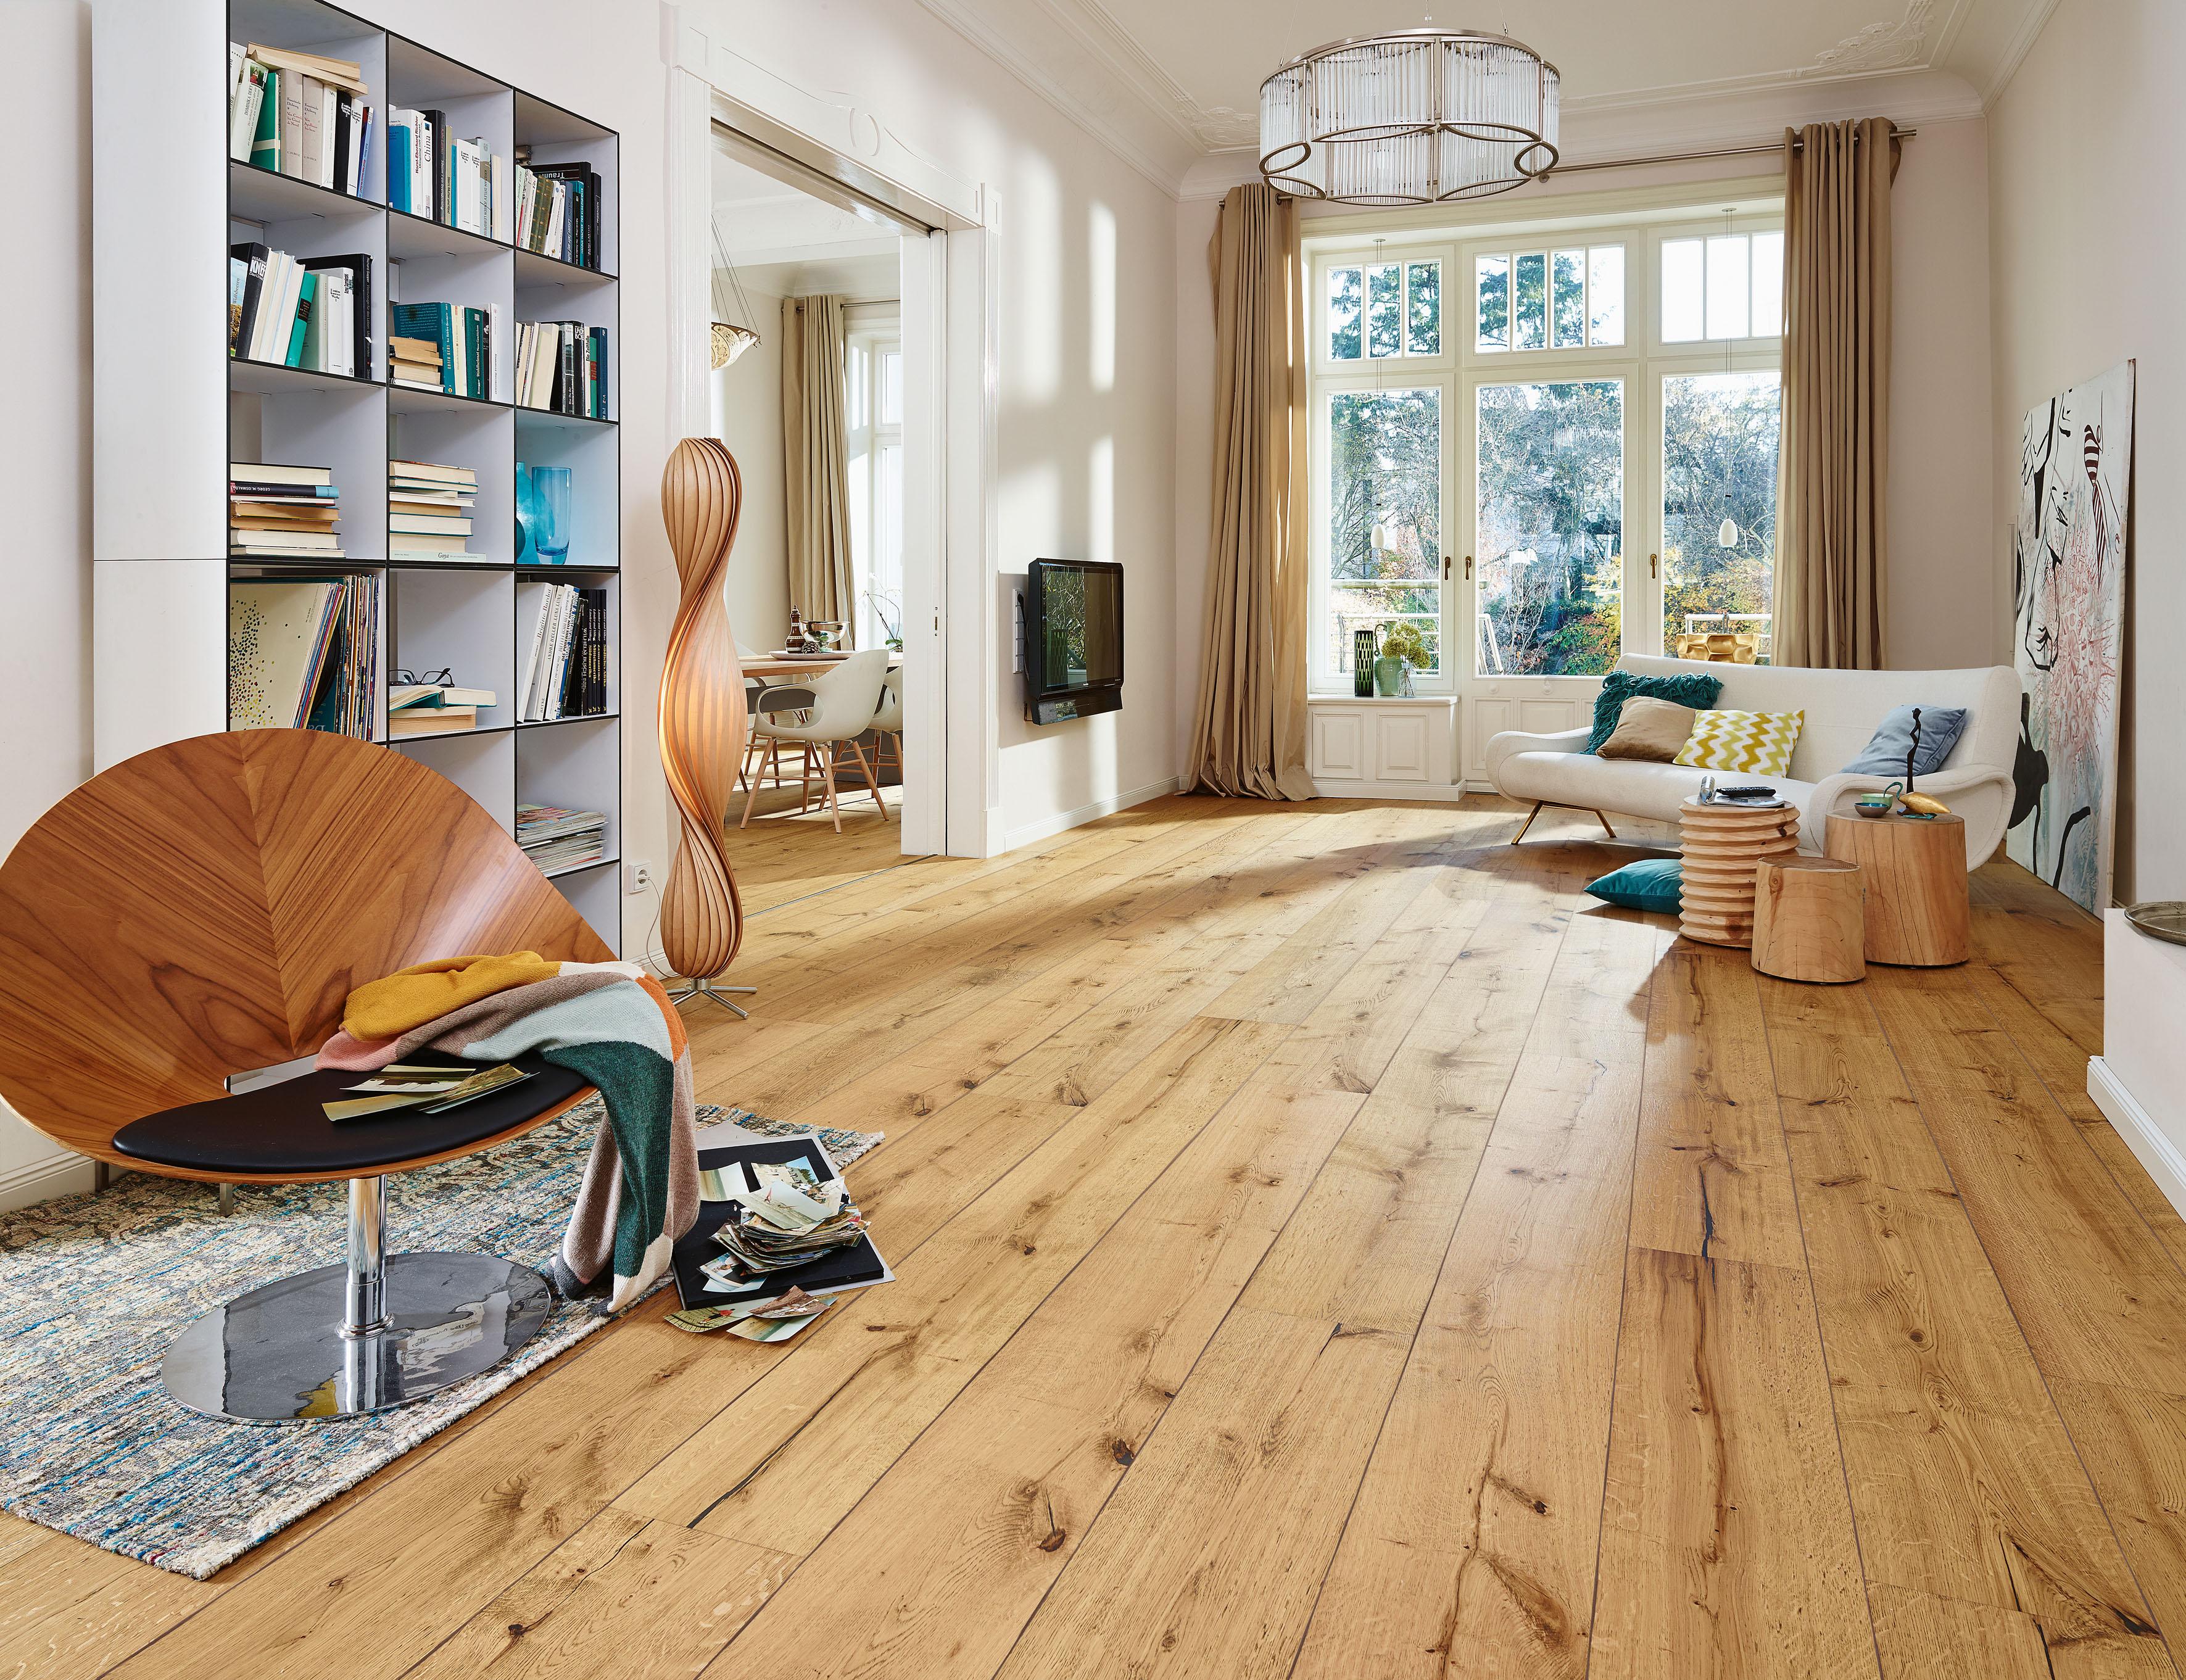 Wohnzimmer mit natürlichen Materialien einrichten #beistelltisch #regal #teppich #sessel #stehlampe #sofa #lampe #sisalteppich #beigefarbenervorhang ©Meister